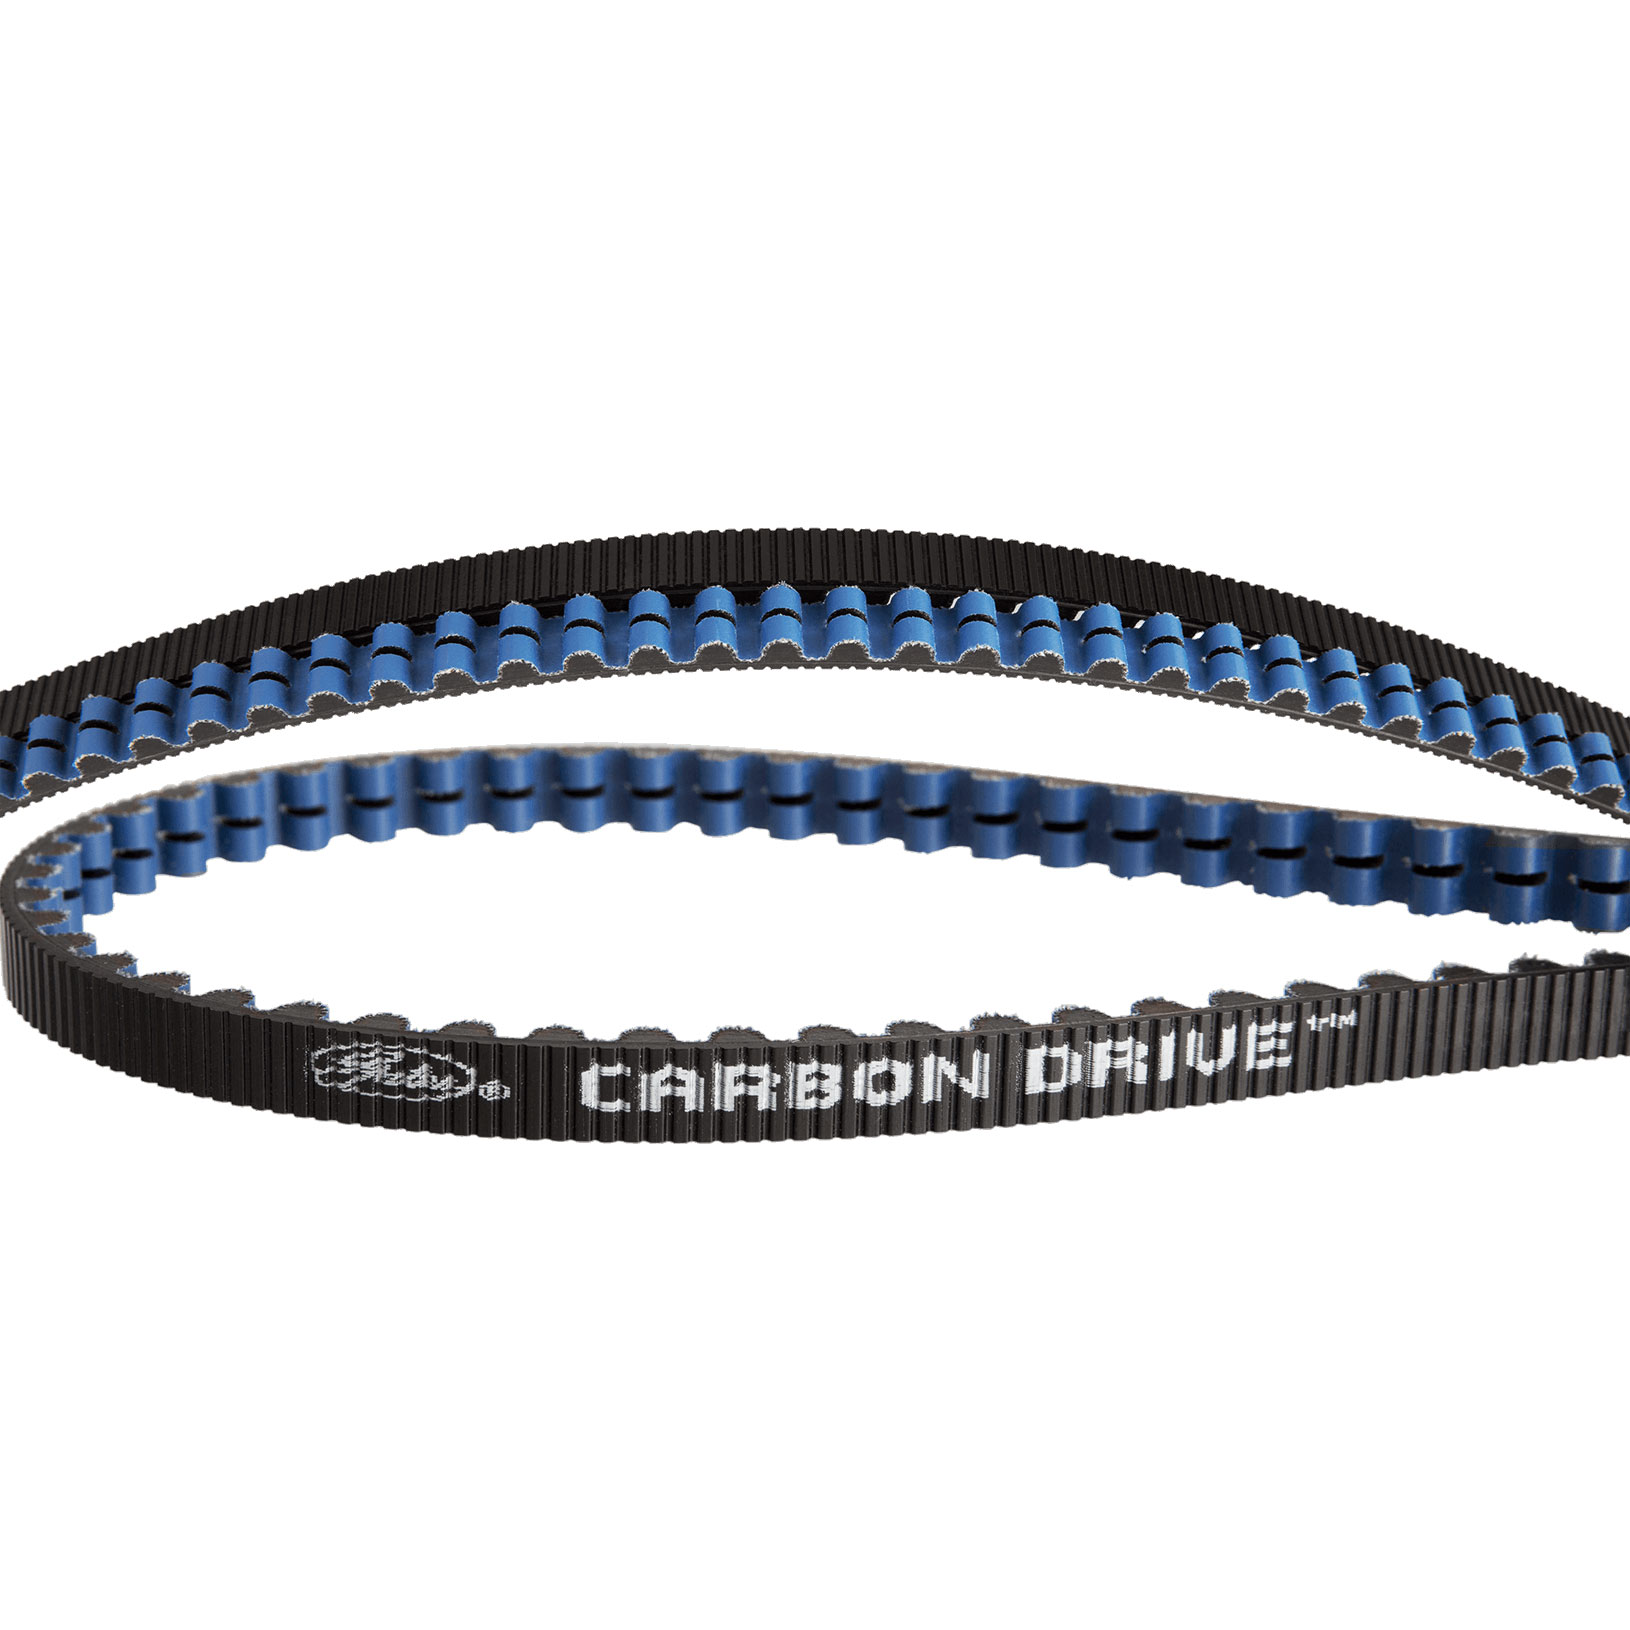 Productfoto van Gates Carbon Drive CDX Centertrack-Belt - blue